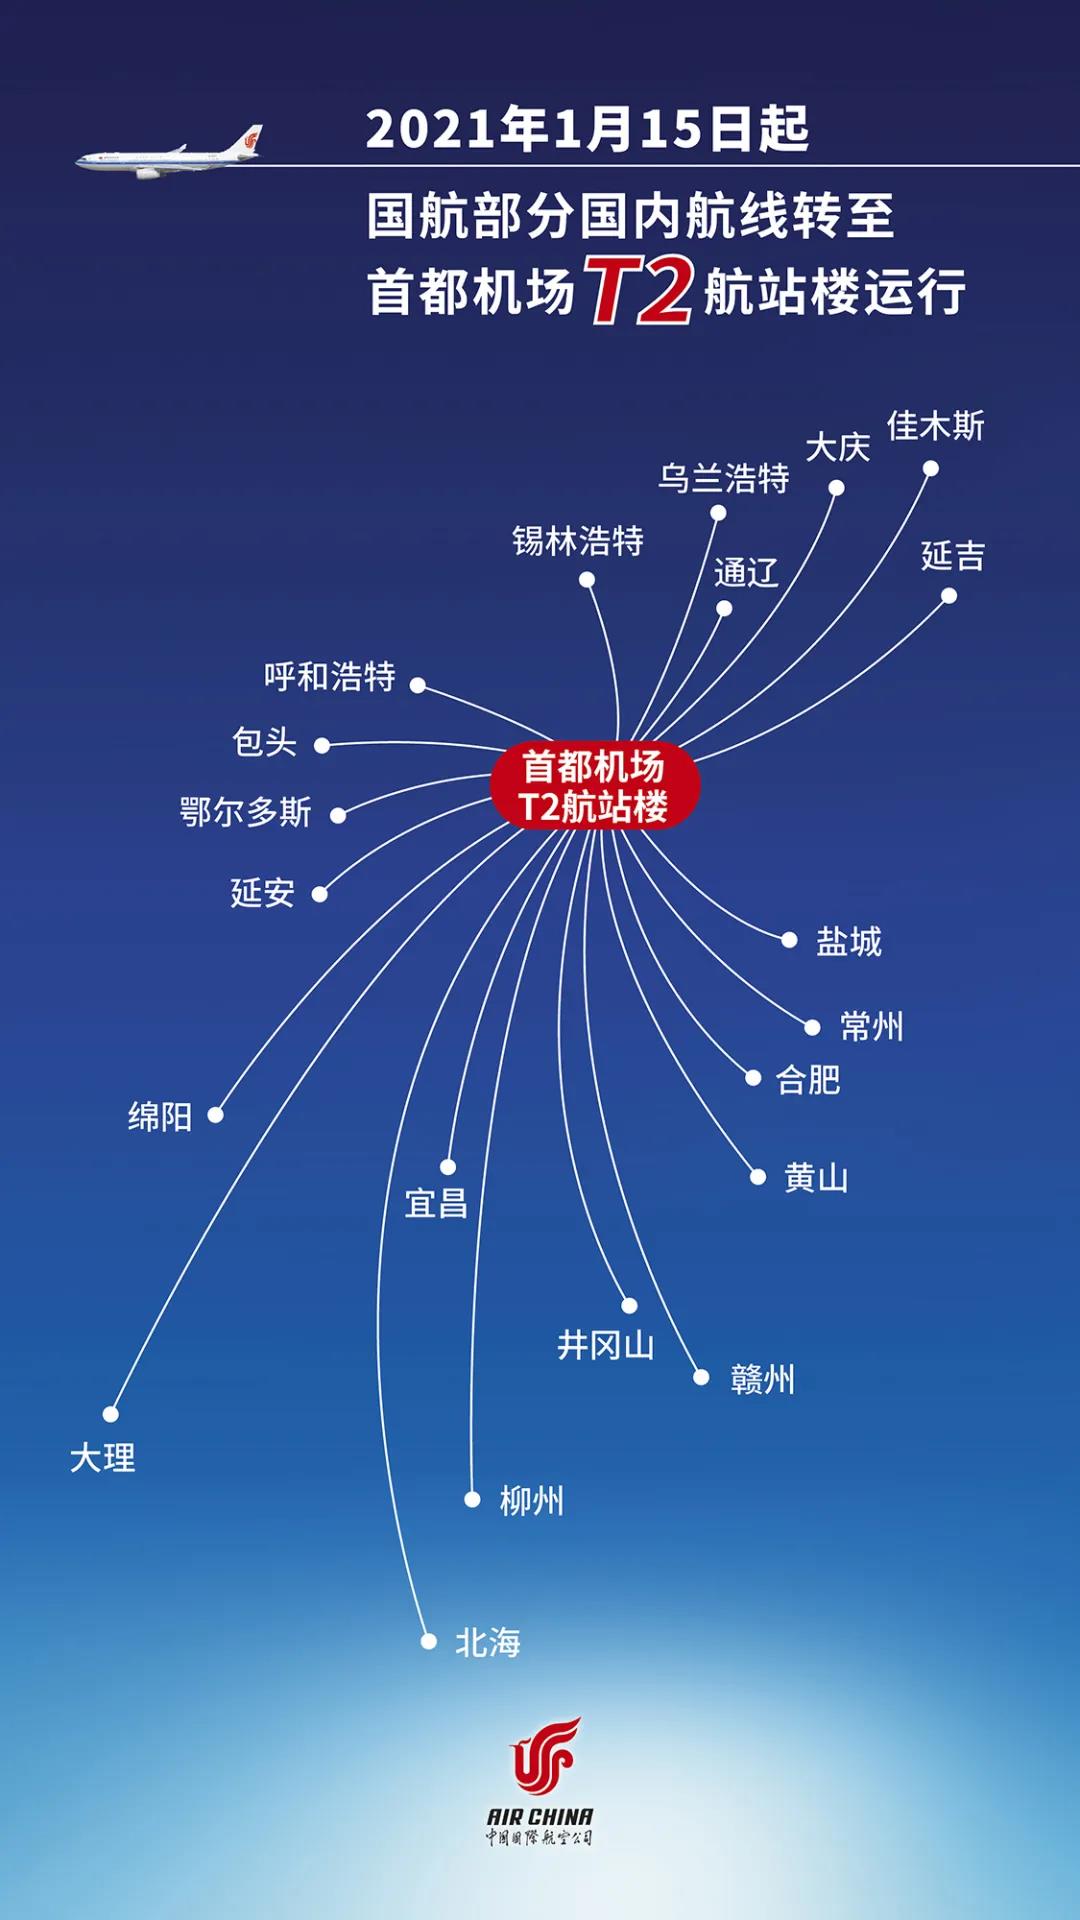 杭州市-国航首都机场部分航空货运航班转至二号航站楼运行-限时达空运物流公司